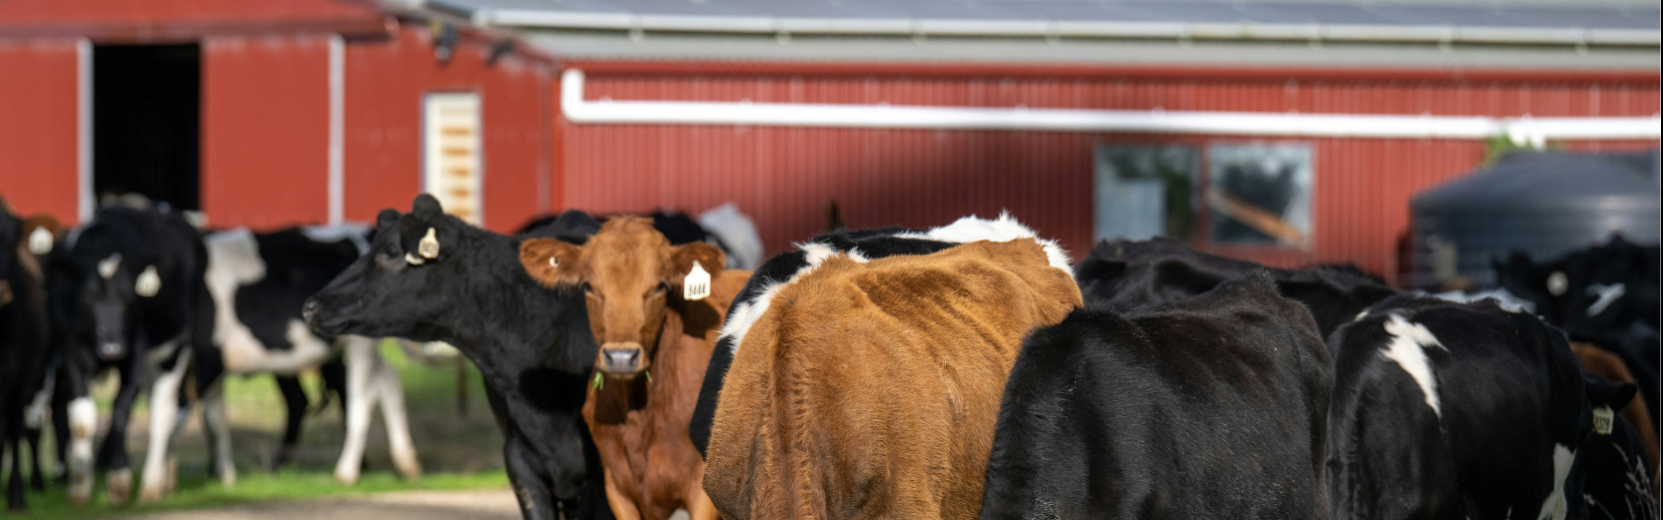 Kühe vor einer roten Farm